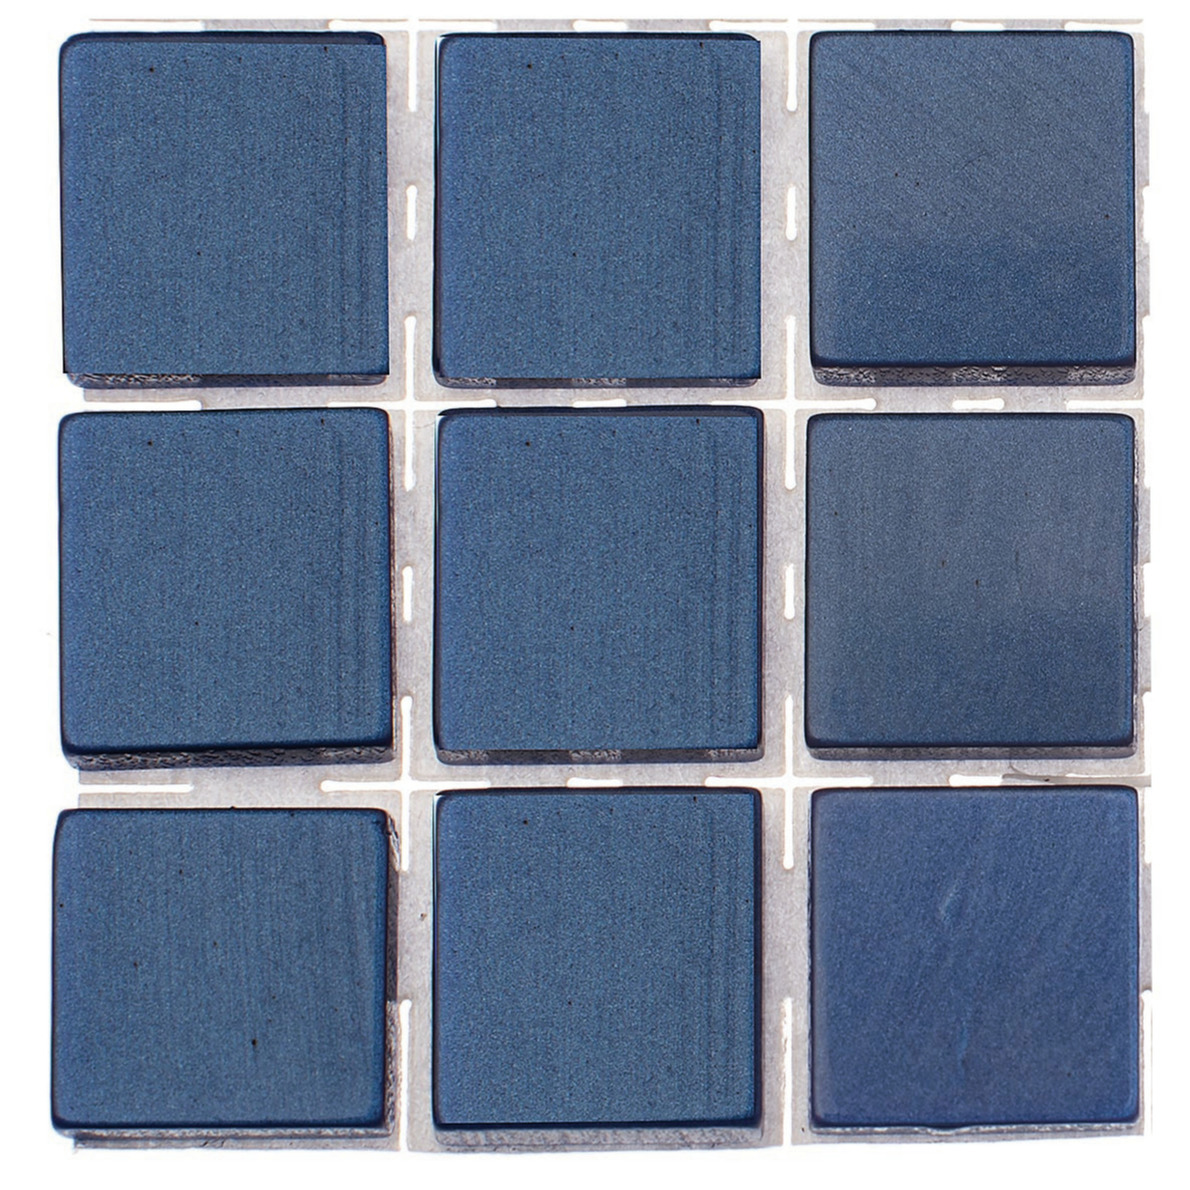 63x stuks mozaieken maken steentjes-tegels kleur donkerblauw 10 x 10 x 2 mm